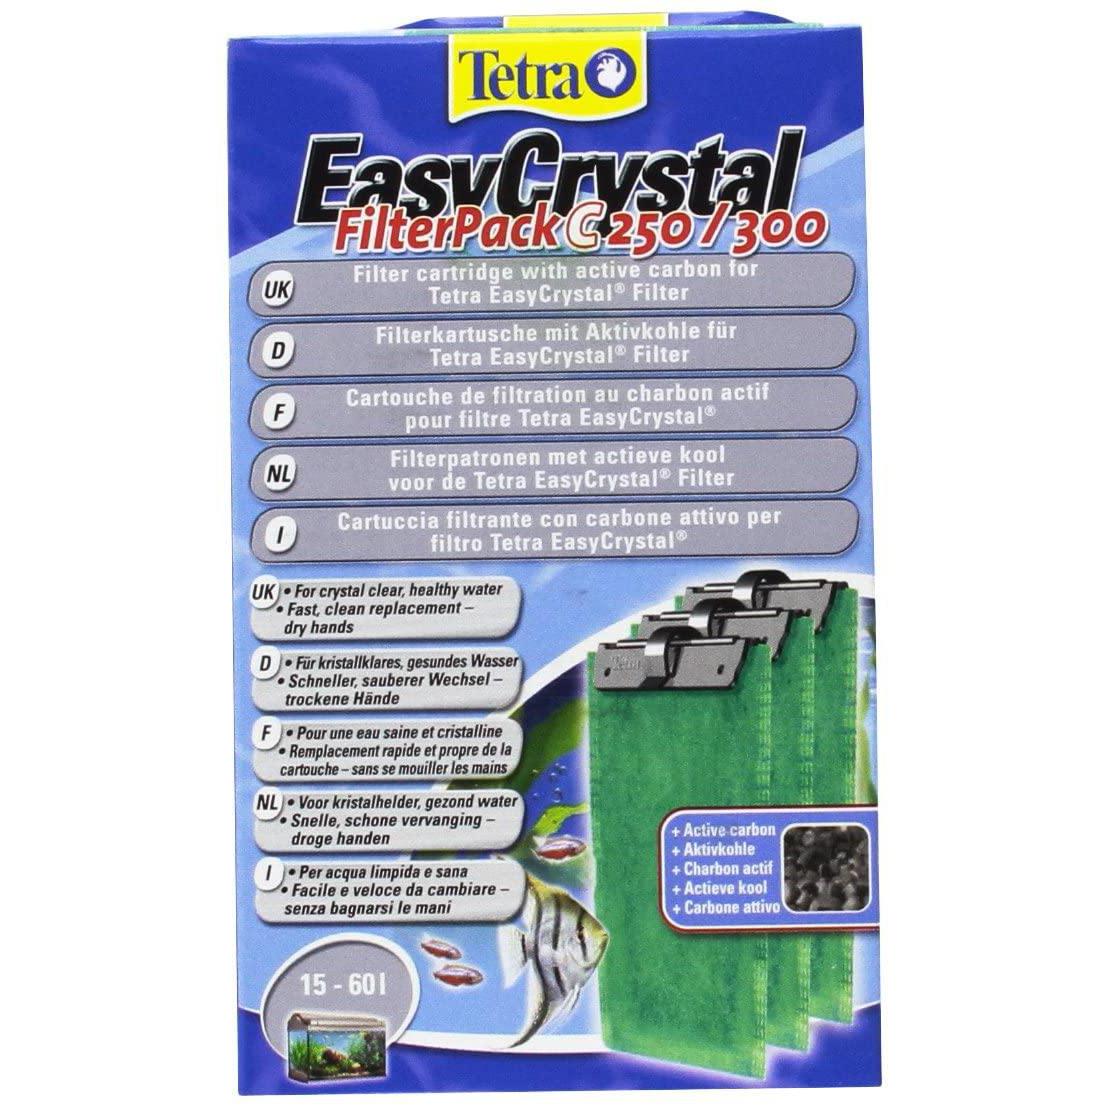 Tetra EasyCrystal Filter C250/300